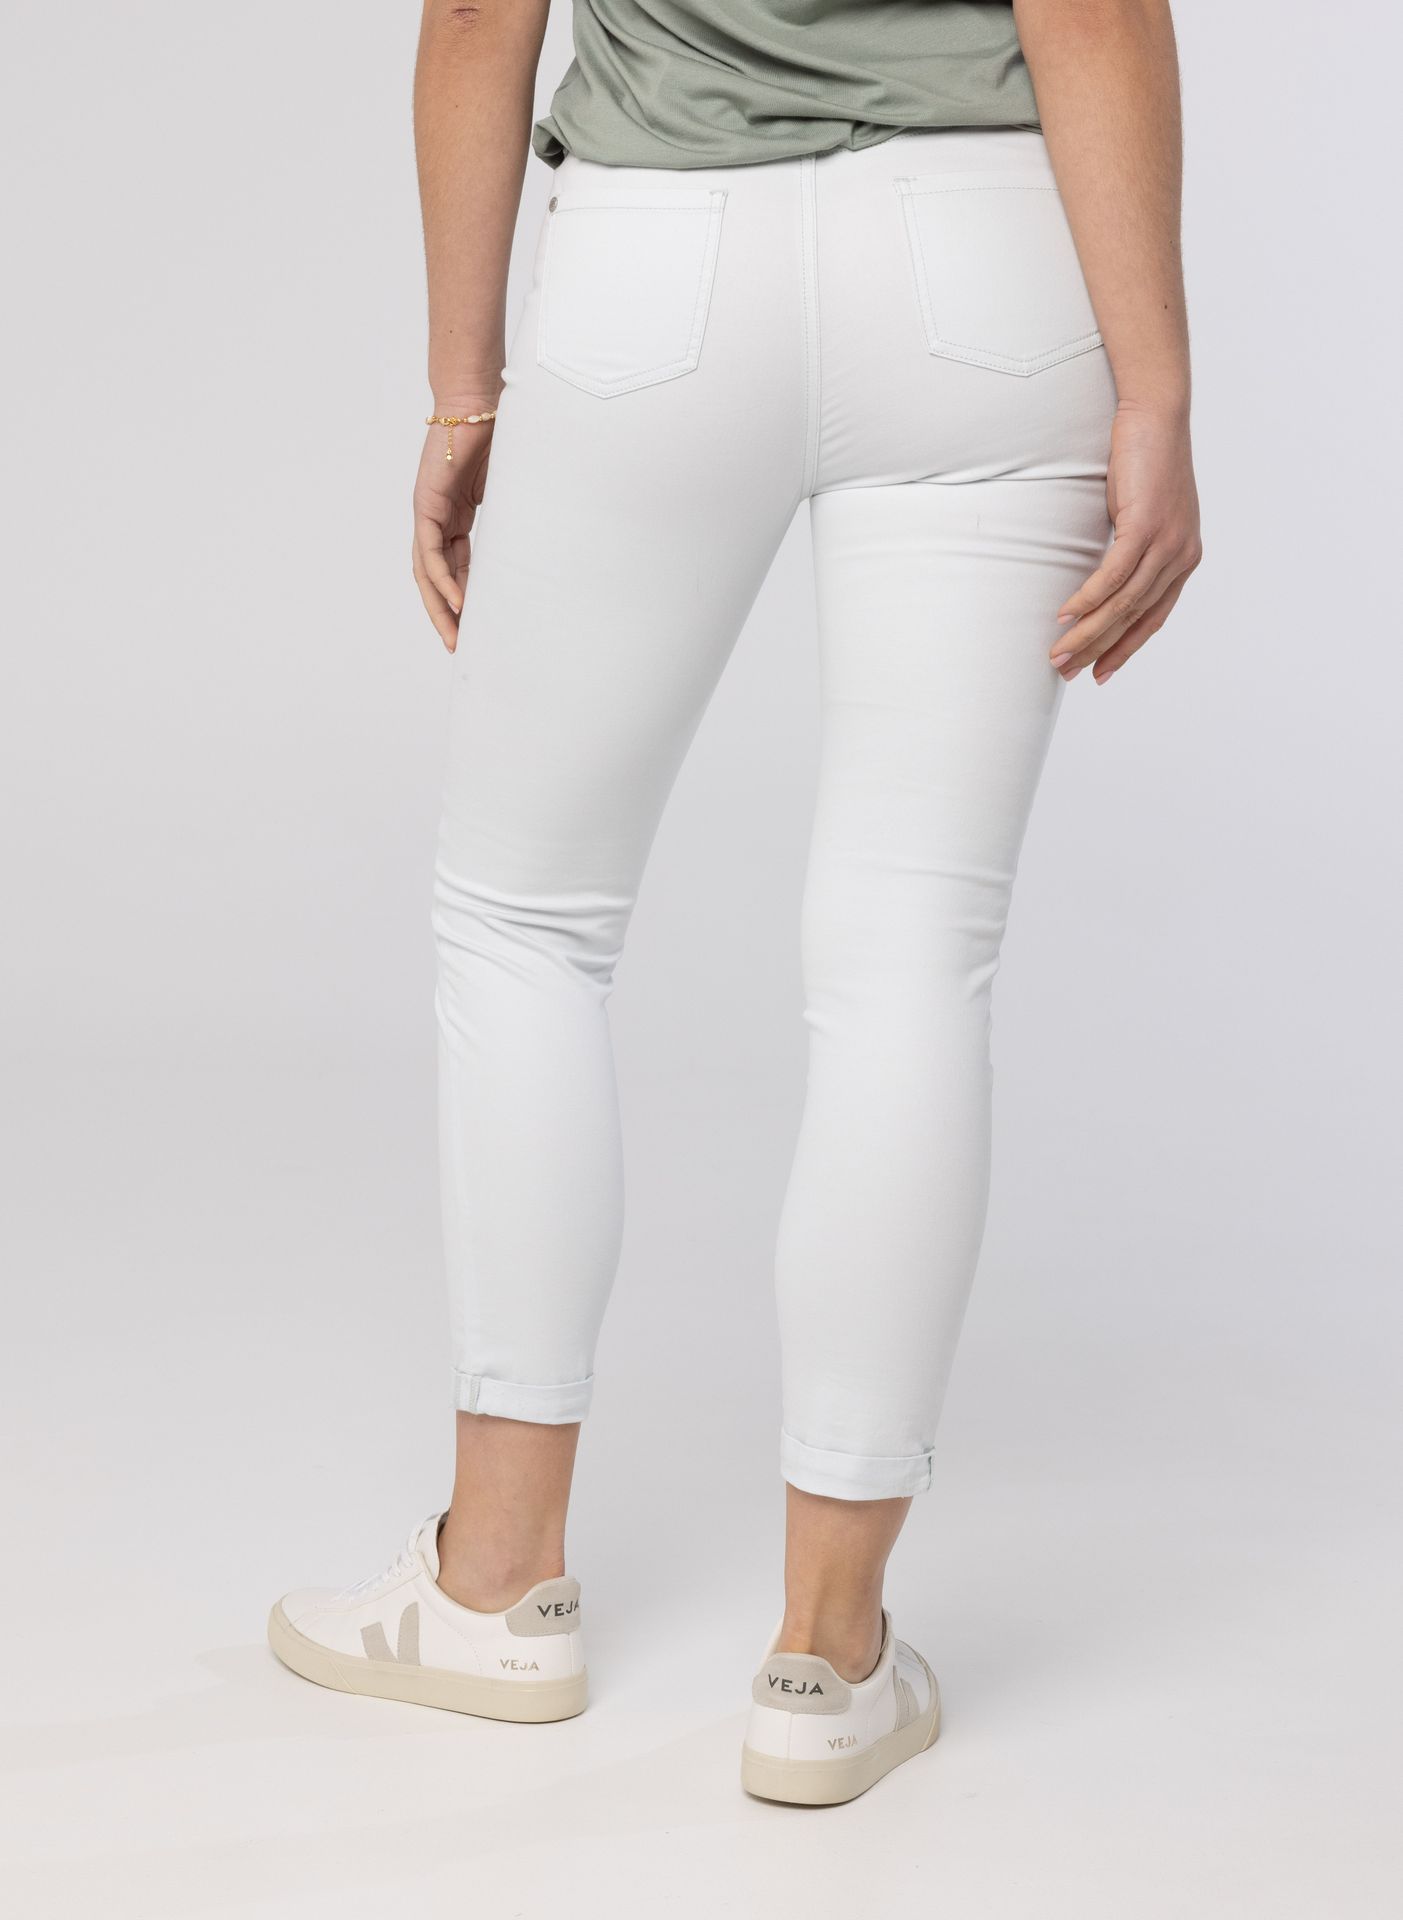 Norah Mintgroene jeans mint 211002-502